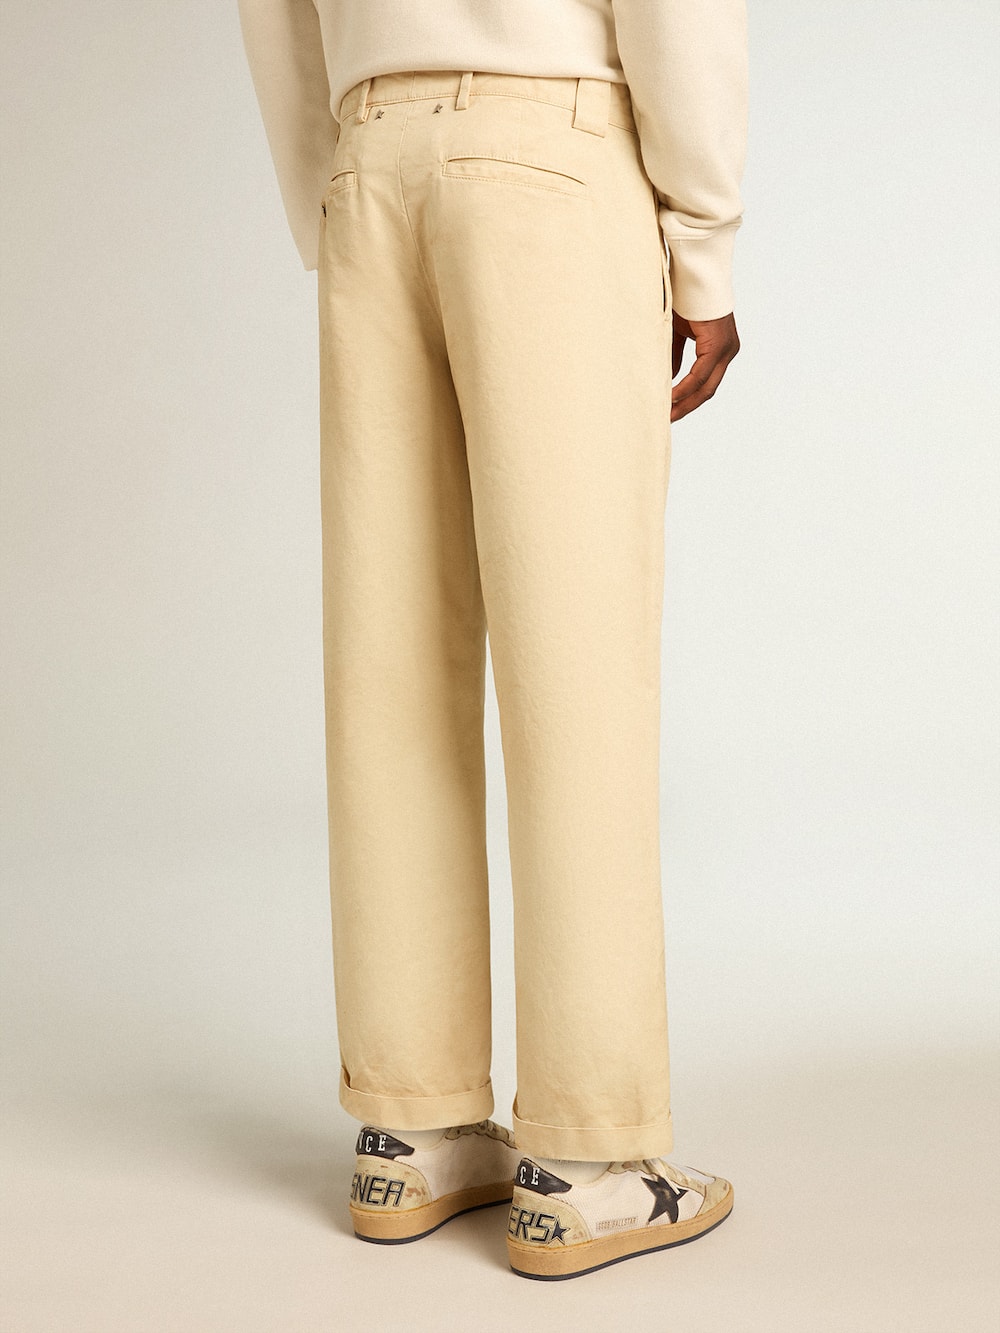 Golden Goose - Pantalón chino en algodón color crudo in 